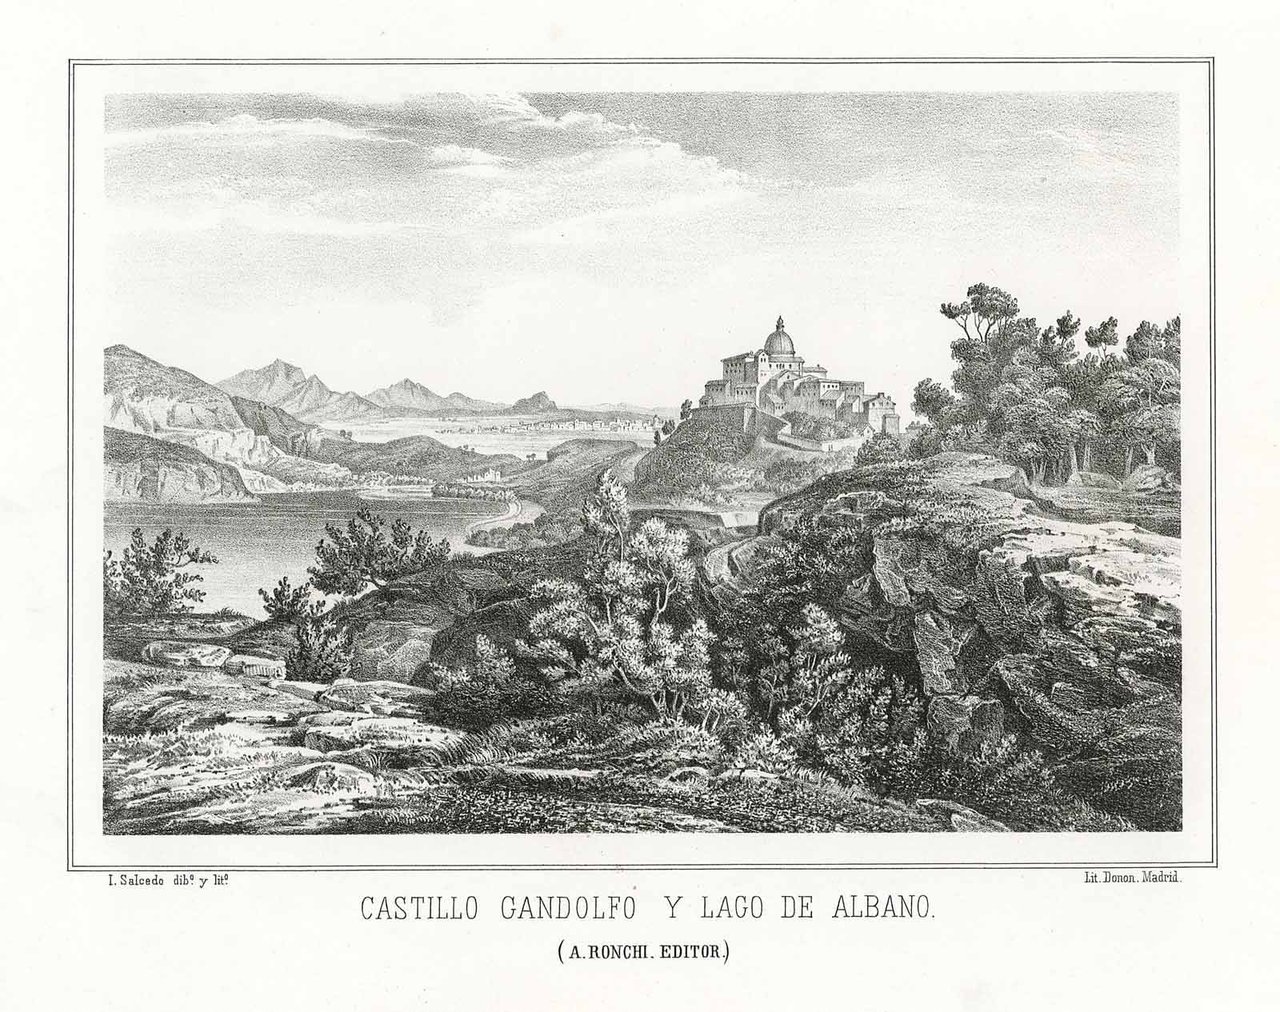 Castillo Gandolfo y Lago de Albano